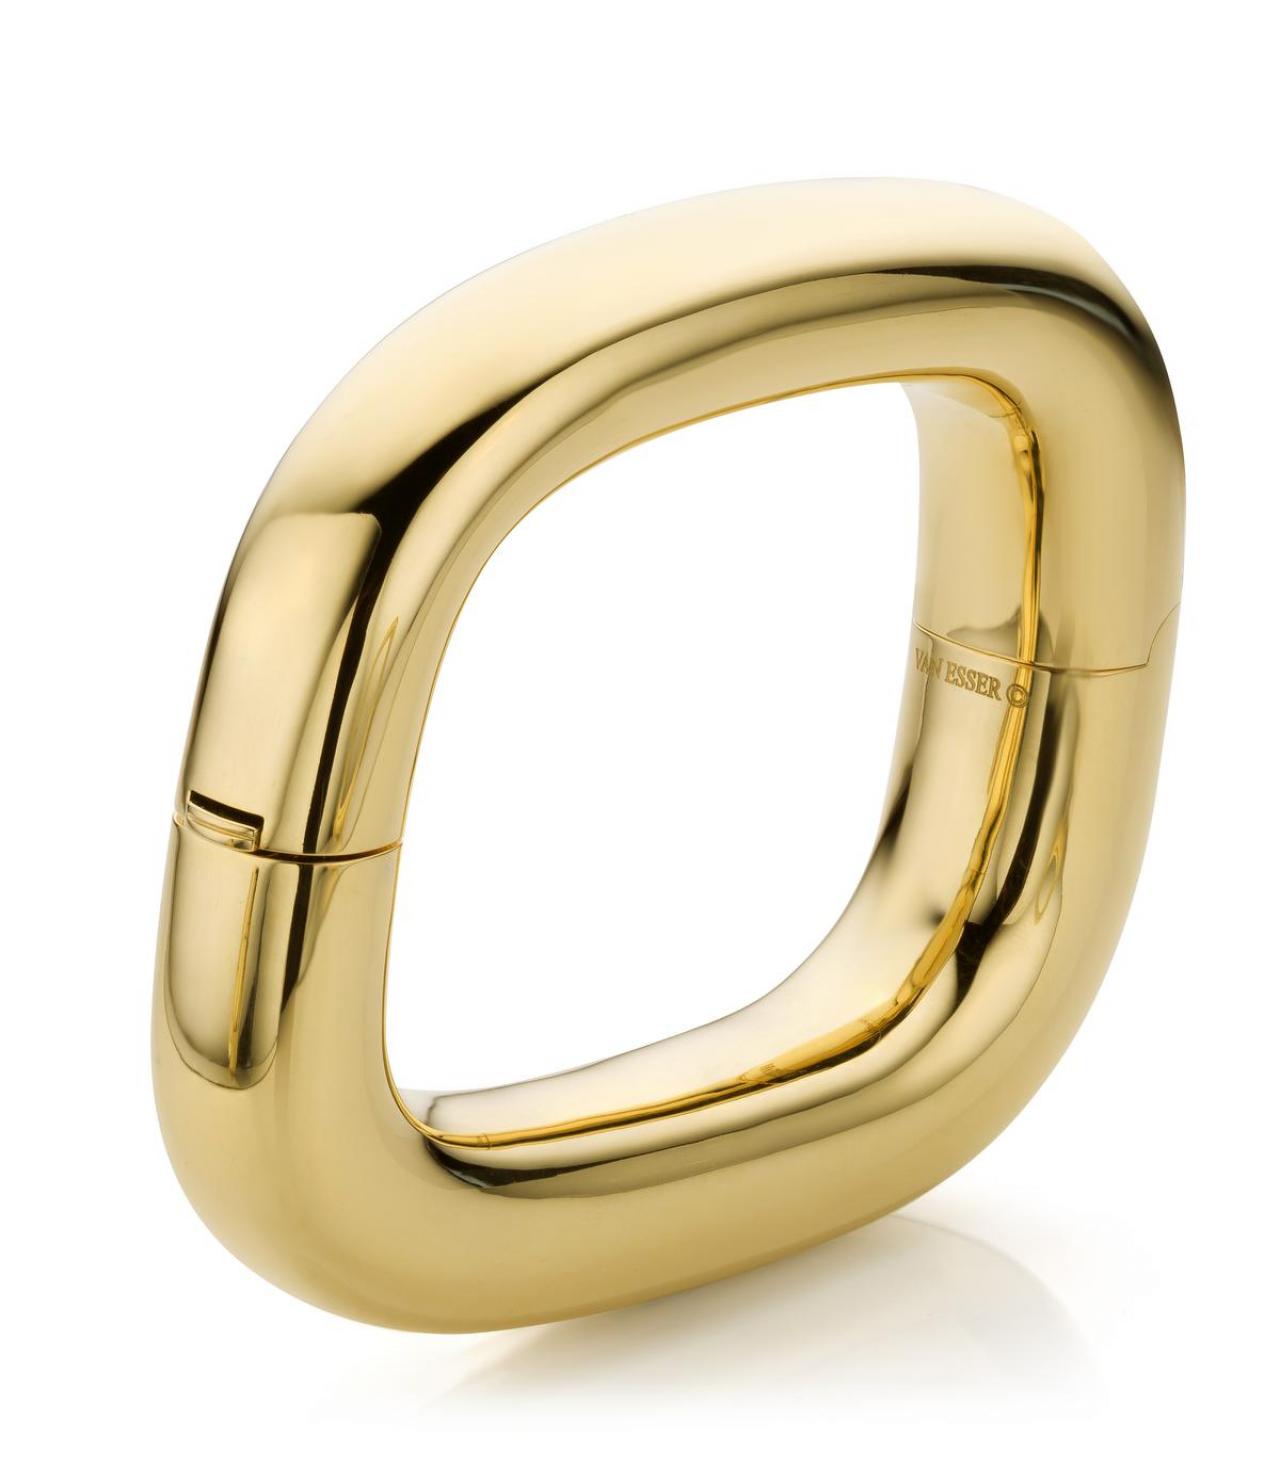 Armband in 18 karaat goud die door zijn eenvoud alle trends overleeft. Creatie van Van Esser (prijs op aanvraag).